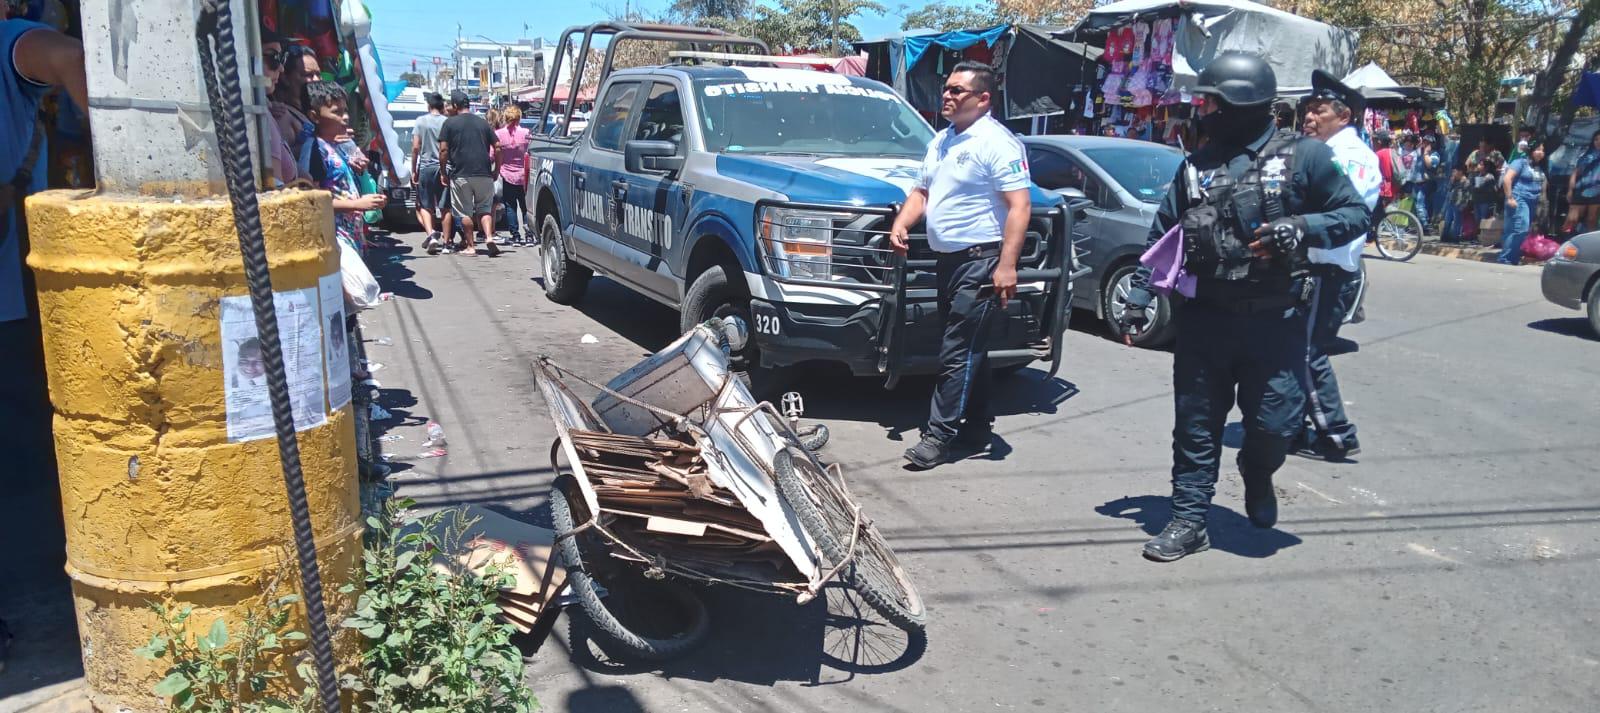 $!Ahora, un camión urbano de Mazatlán arrolla triciclo empujado por adulto mayor